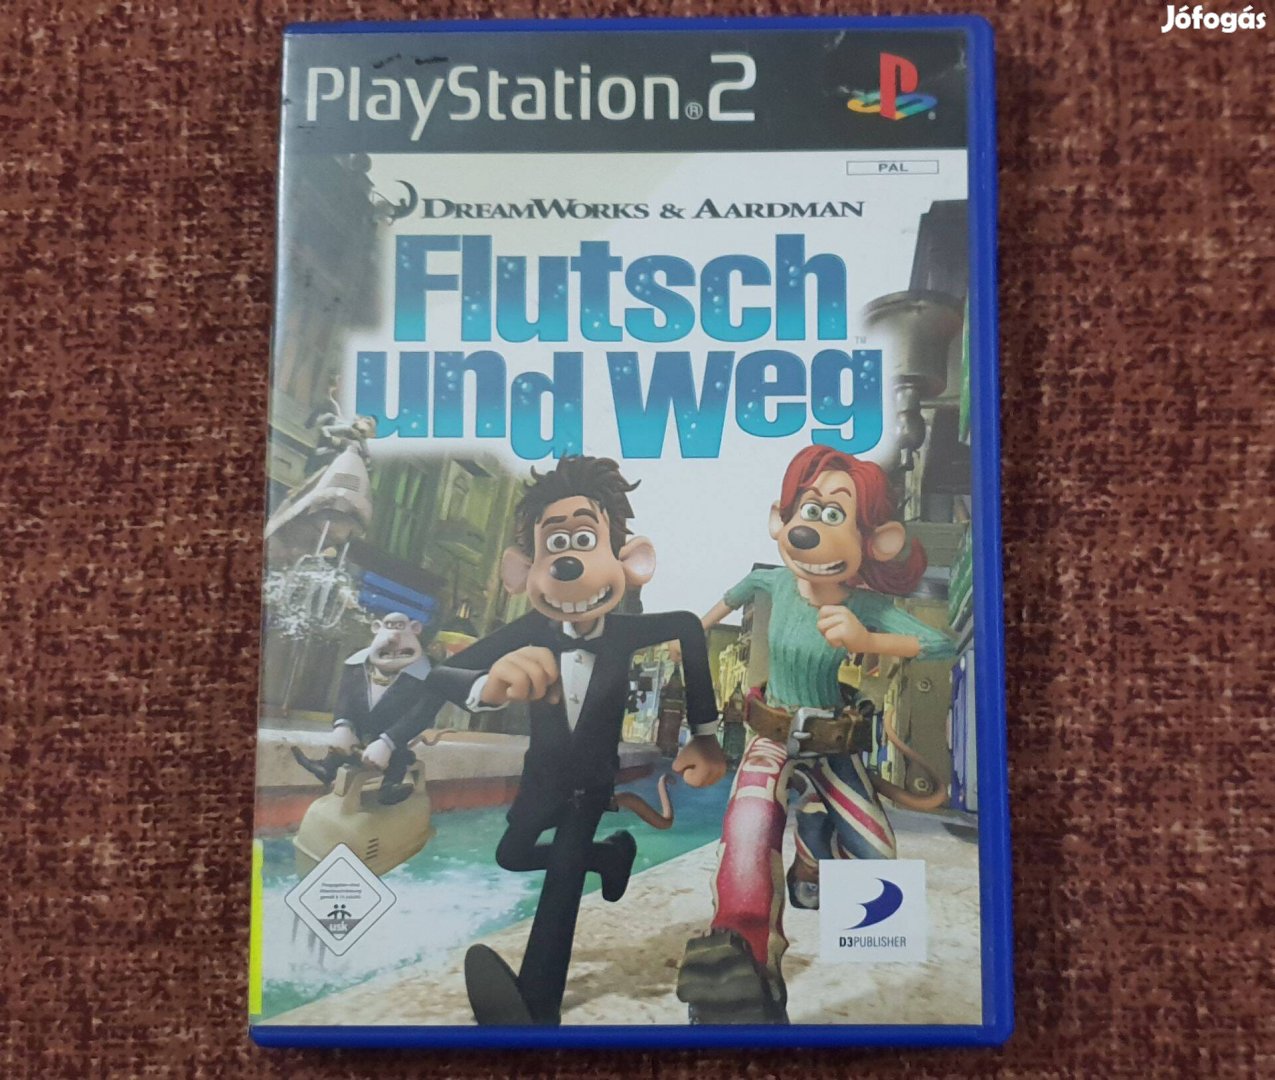 Flushed Away Playstation 2 eredeti lemez eladó ( 4000 Ft )